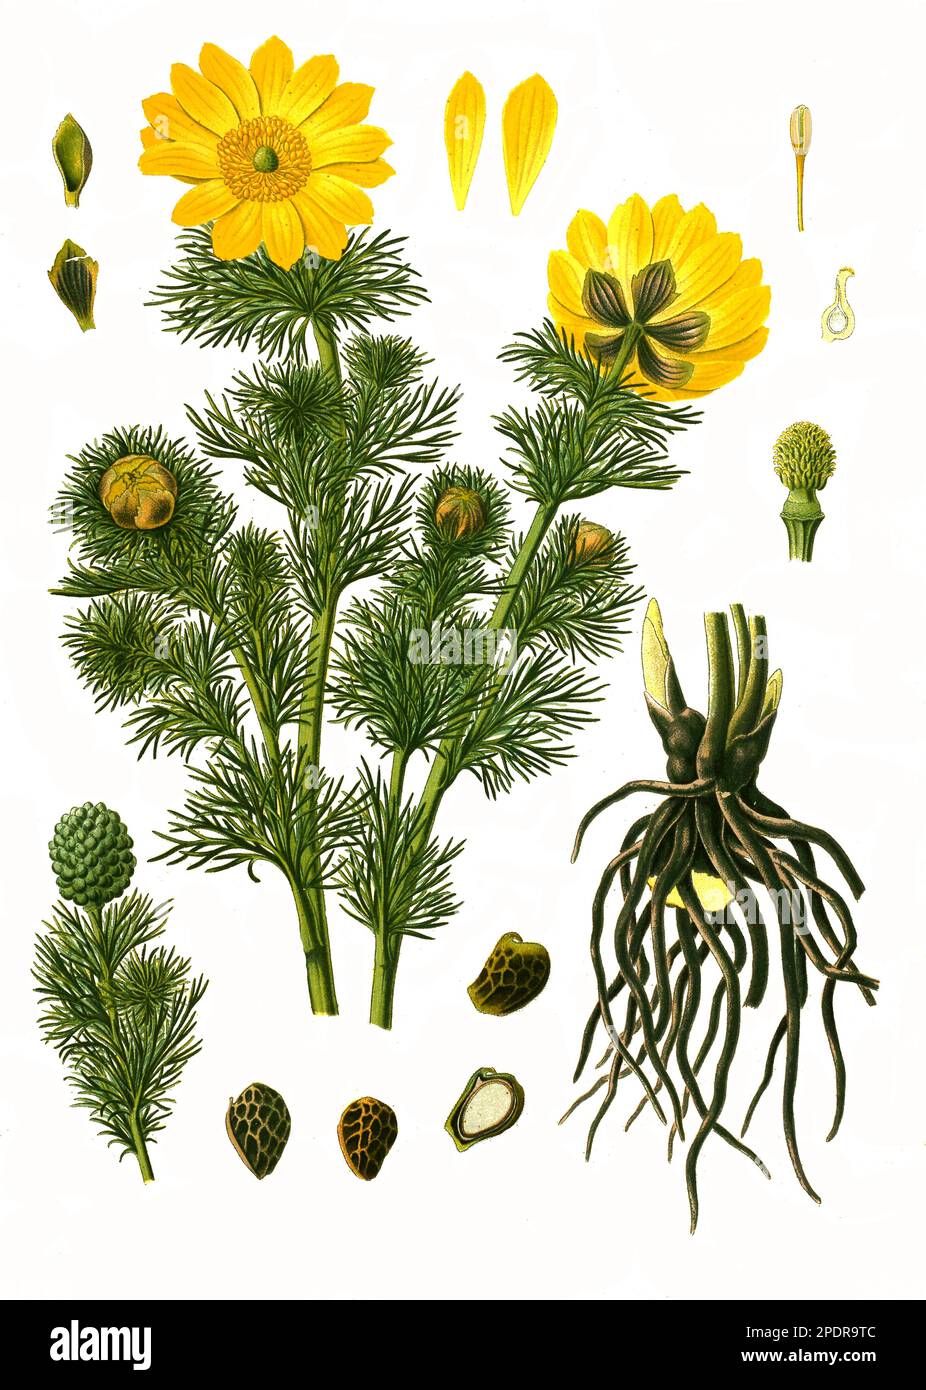 Heilpflanze, Frühlings-Adonisröschen oder der Frühlings-Adonis (Adonis vernalis), Historisch, digital restaurierte Reproduktion von einer Vorlage aus dem 18. Jahrhundert Stock Photo